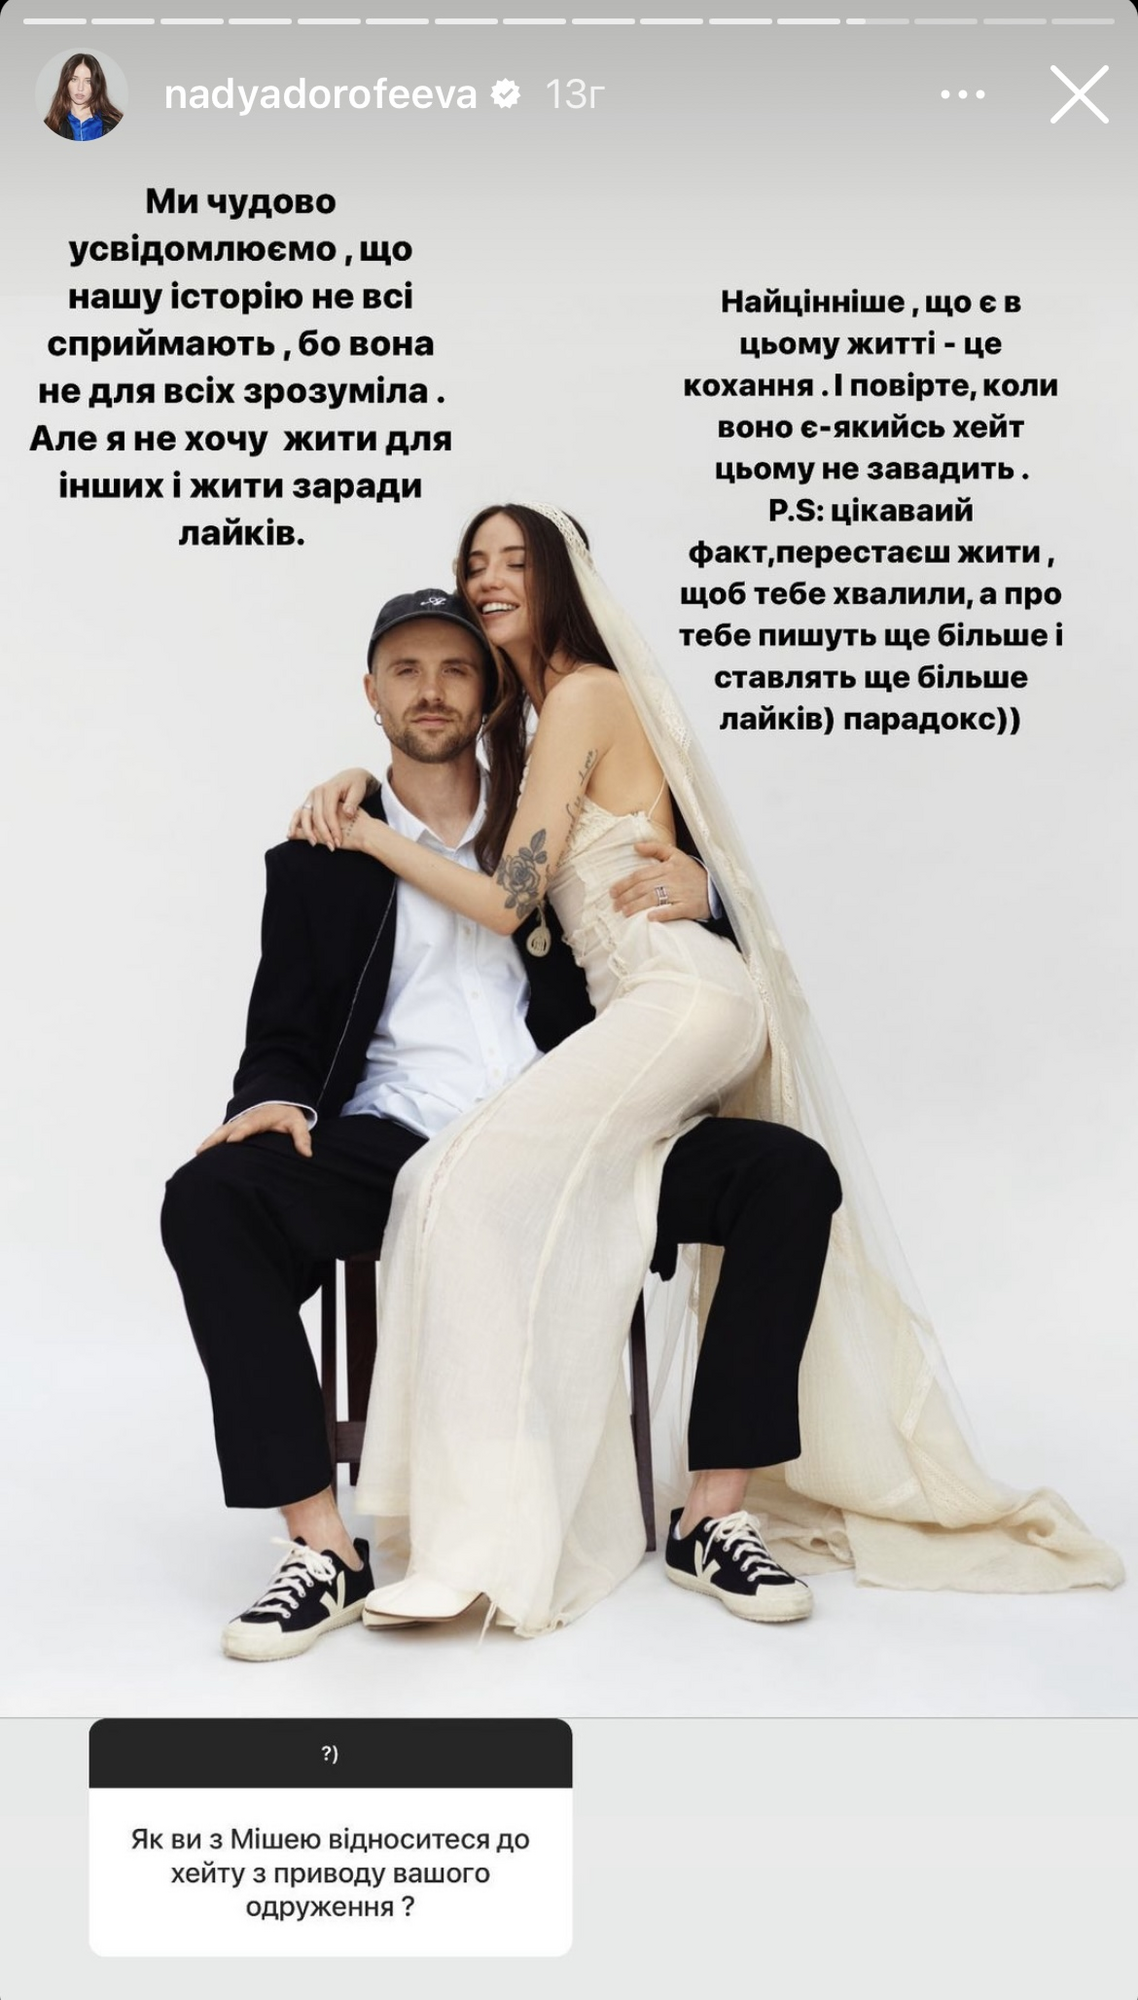 "Не хочу жити для інших": Дорофєєва відповіла на хейт через весілля з Кацуріним і зізналася в проблемах із самооцінкою